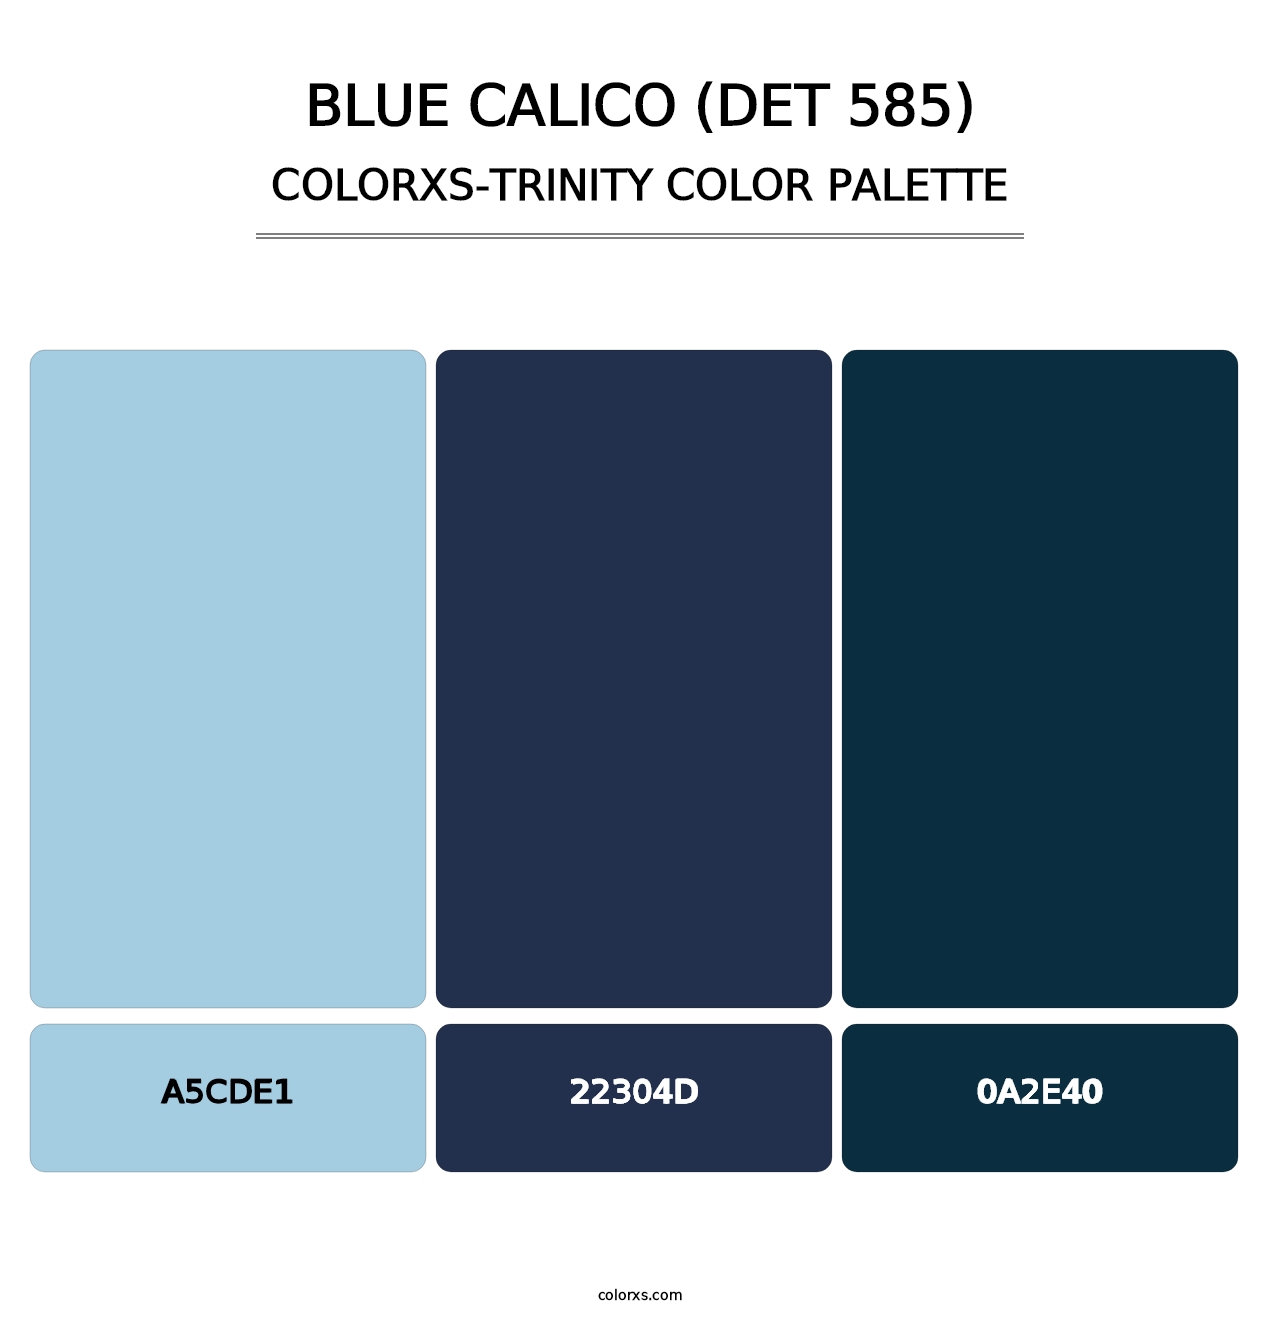 Blue Calico (DET 585) - Colorxs Trinity Palette